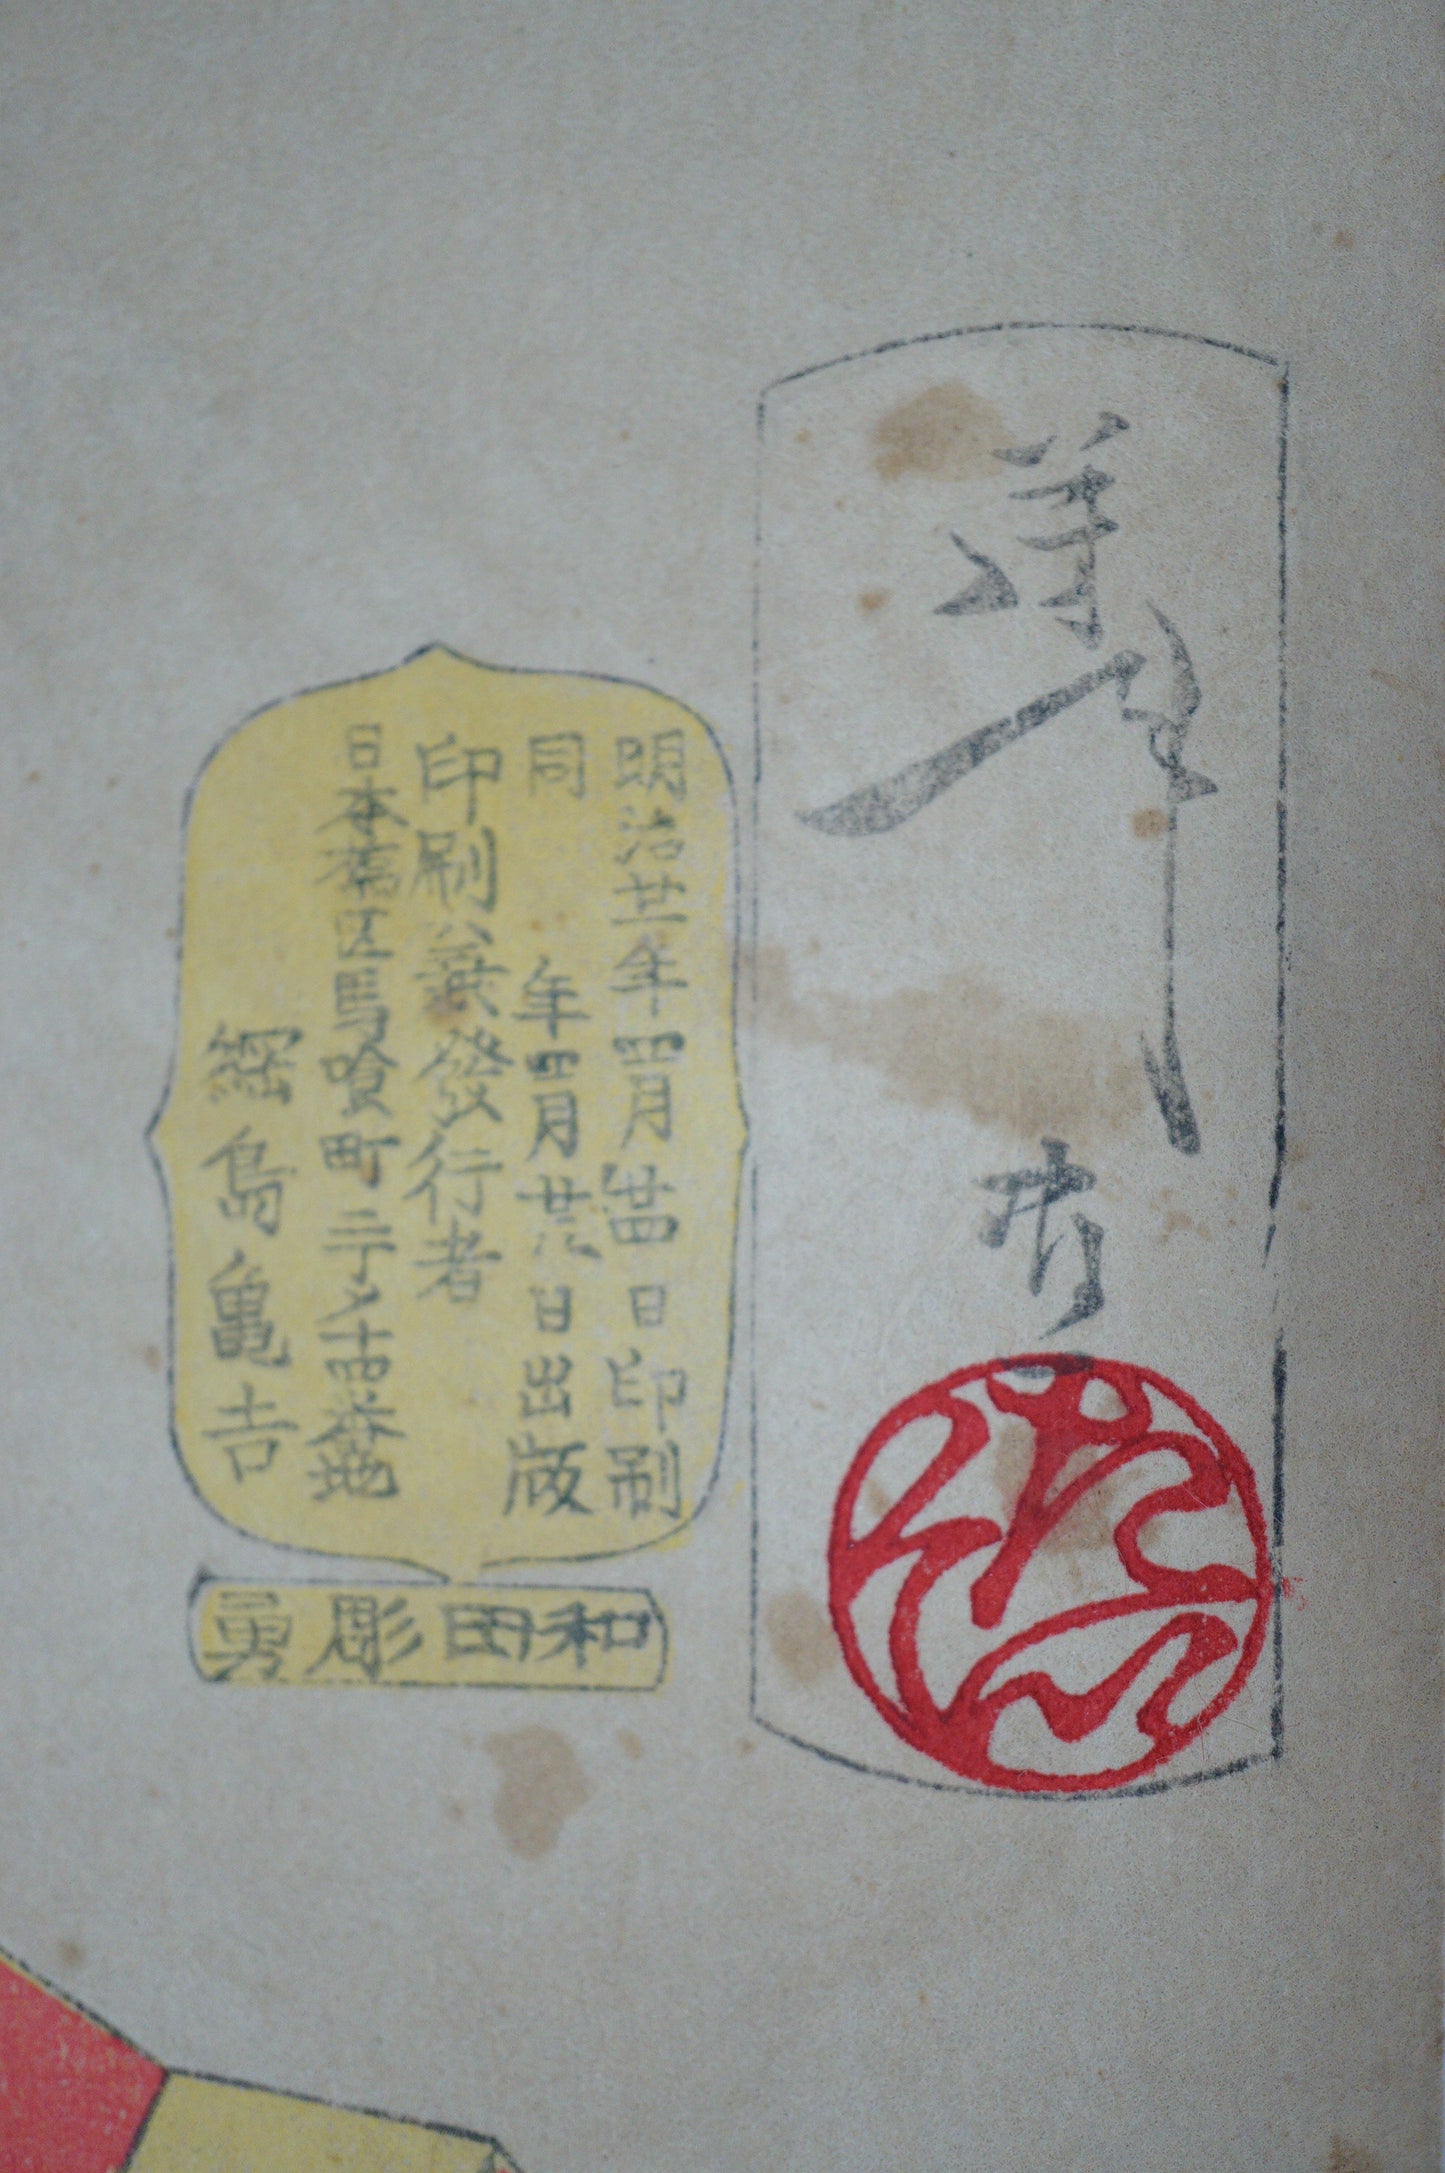 罕见的日本芳年木版画原版“看起来很合适” 0310E9